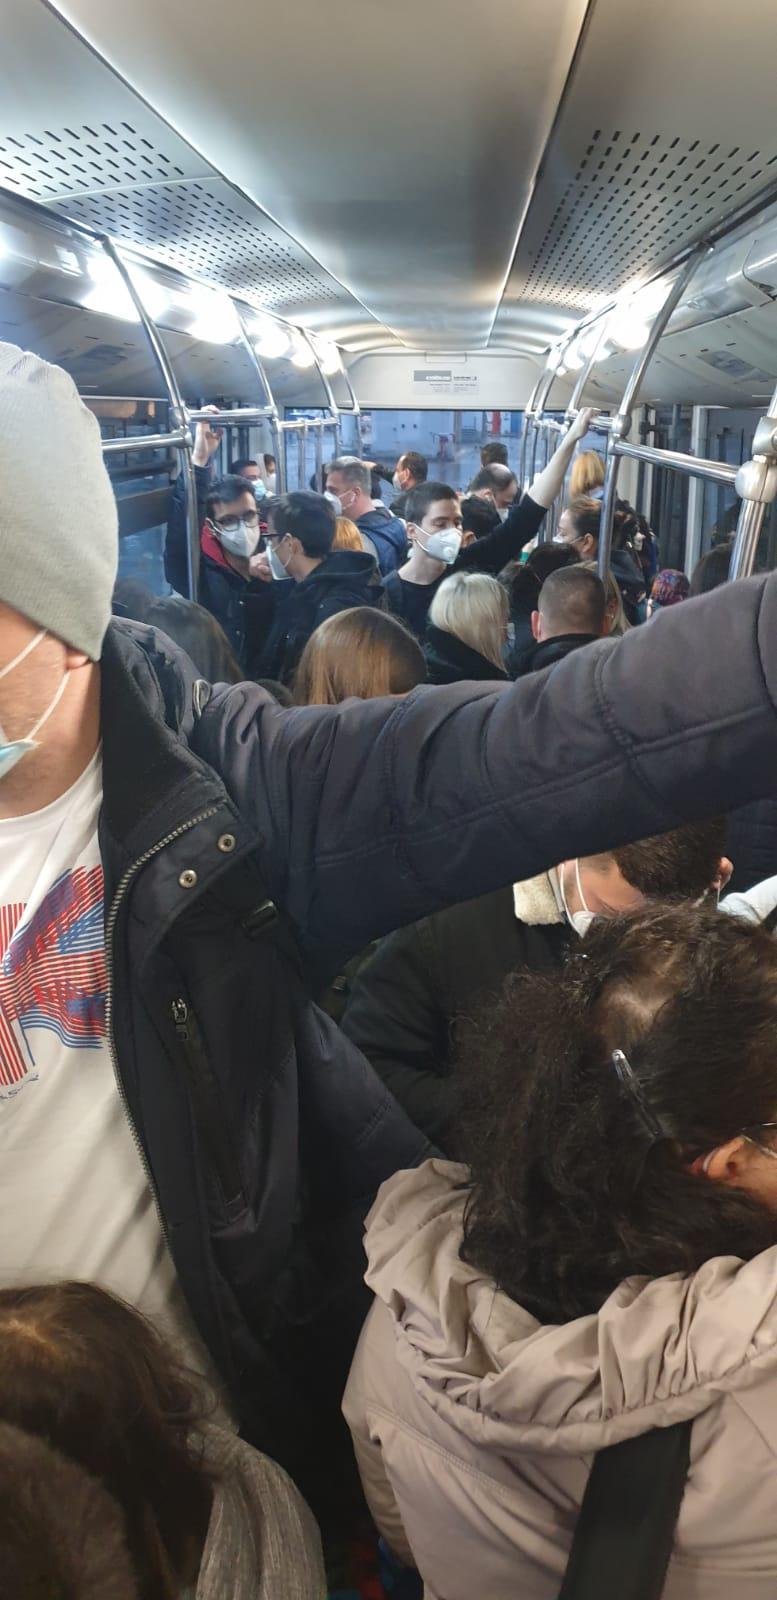 Poze cu oamenii înghesuiți în autobuz